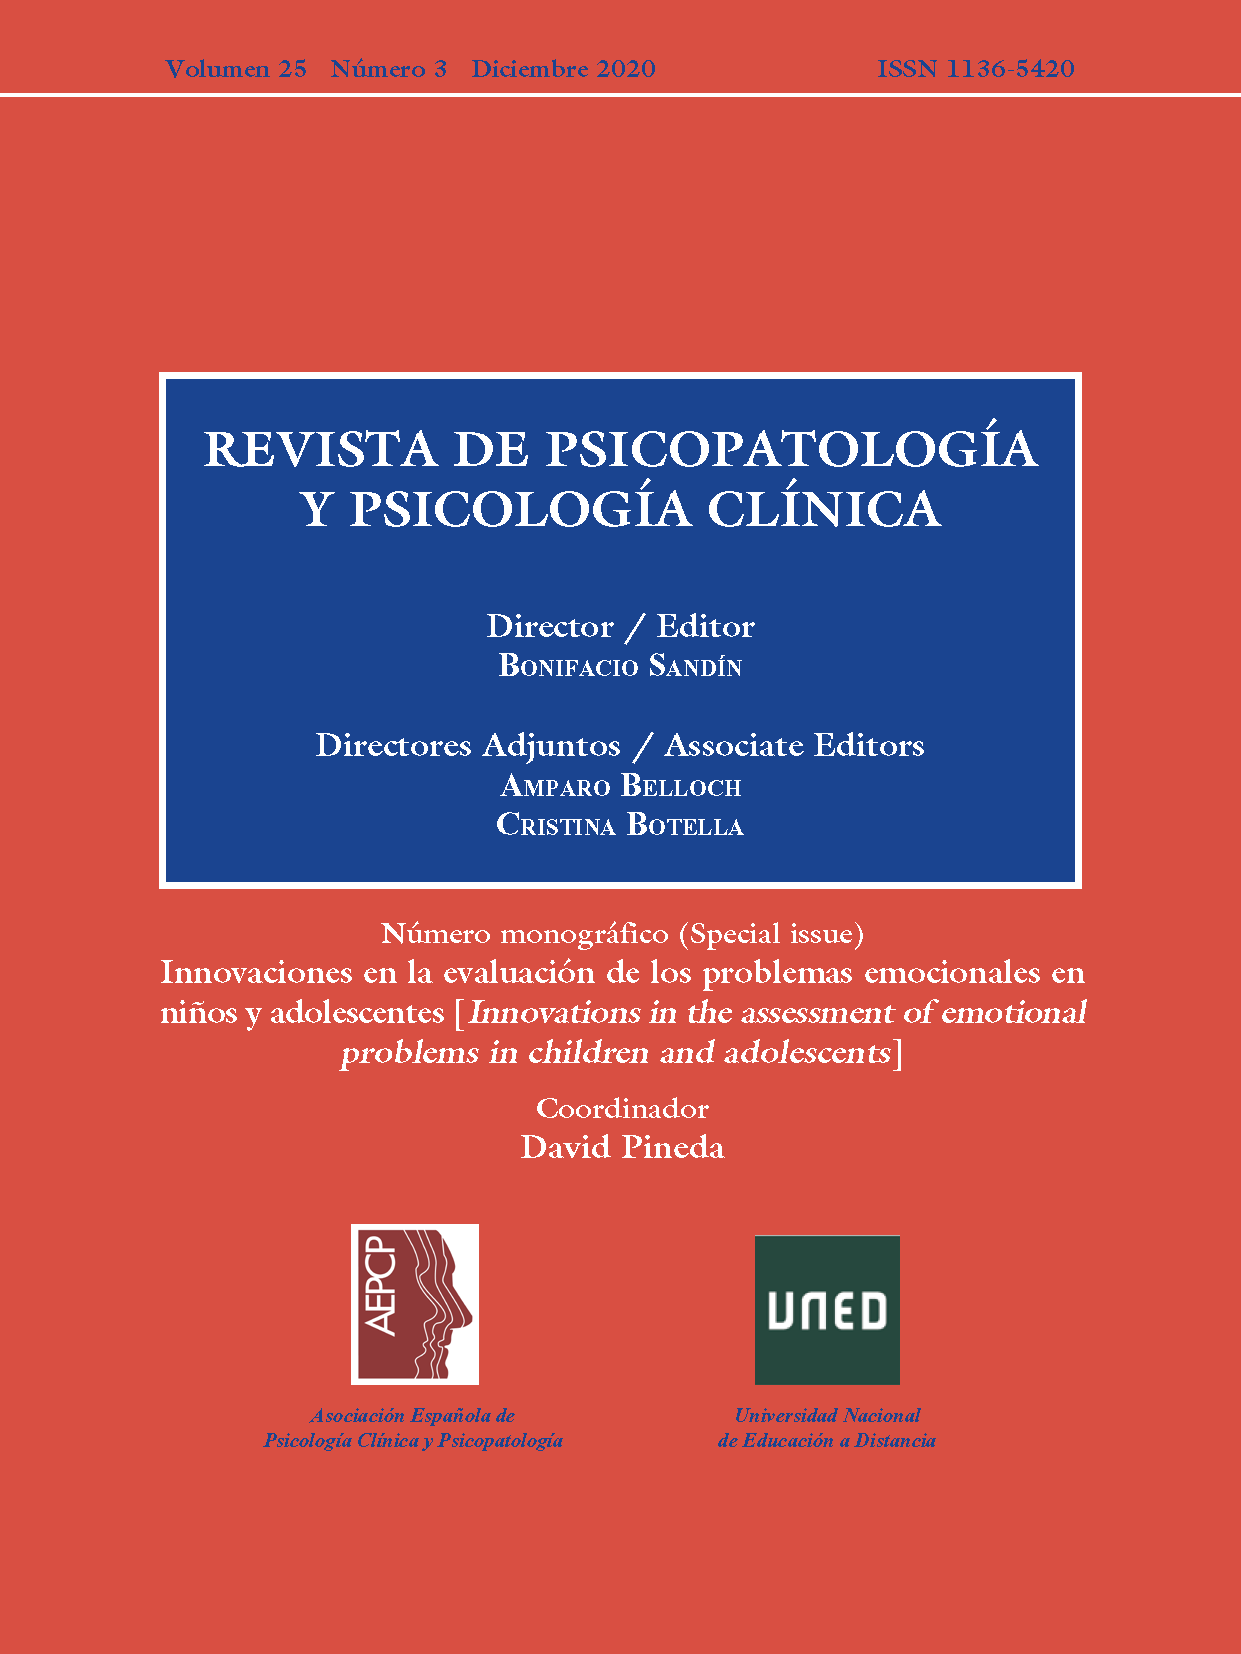 Revista de Psicopatología y Psicología Clínica